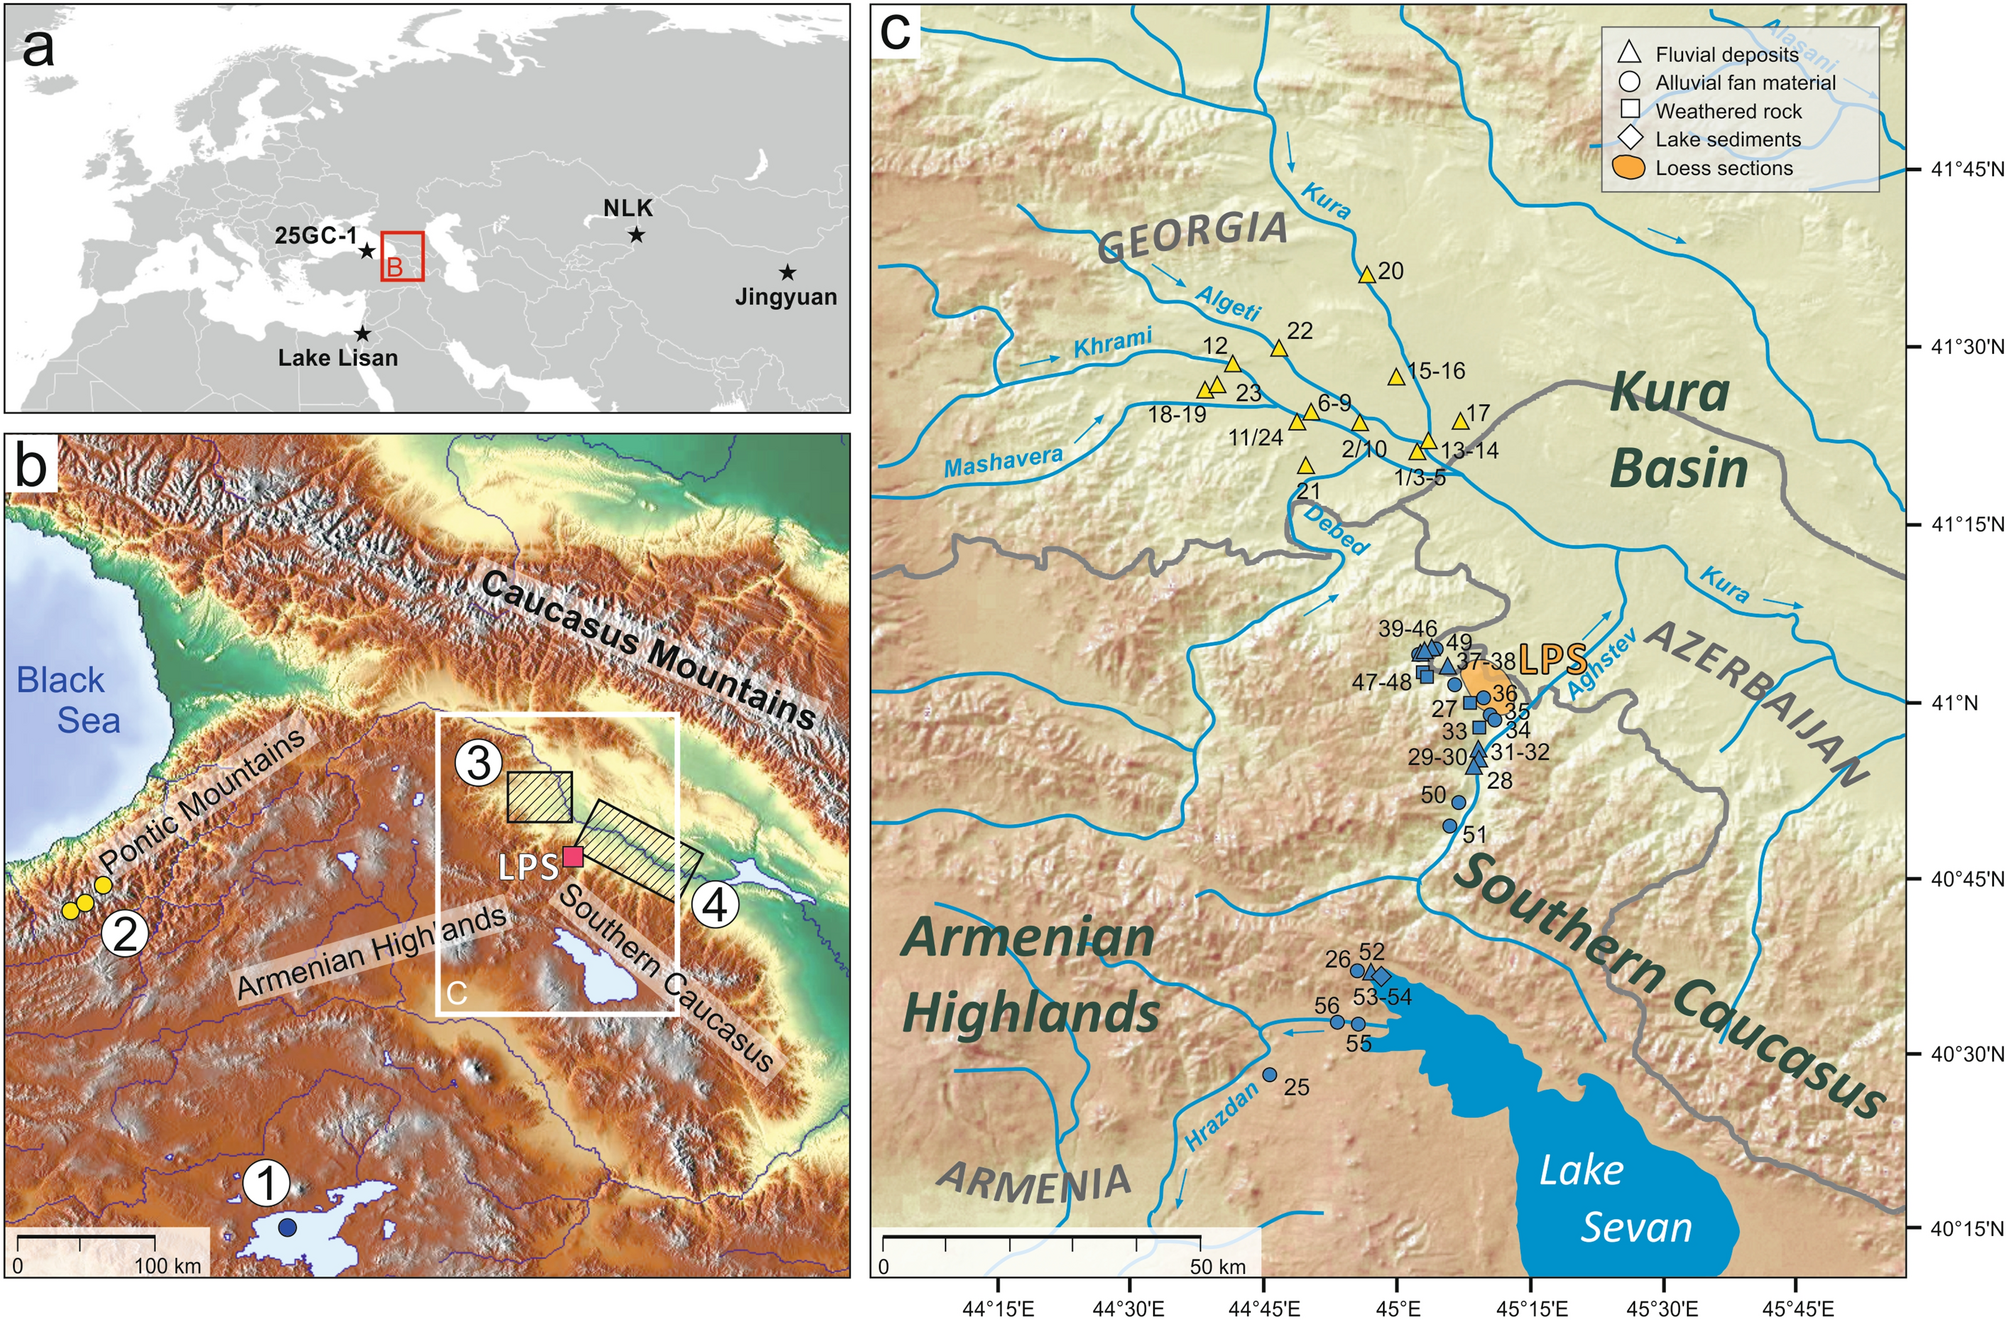 Map Explainer: The Caucasus Region